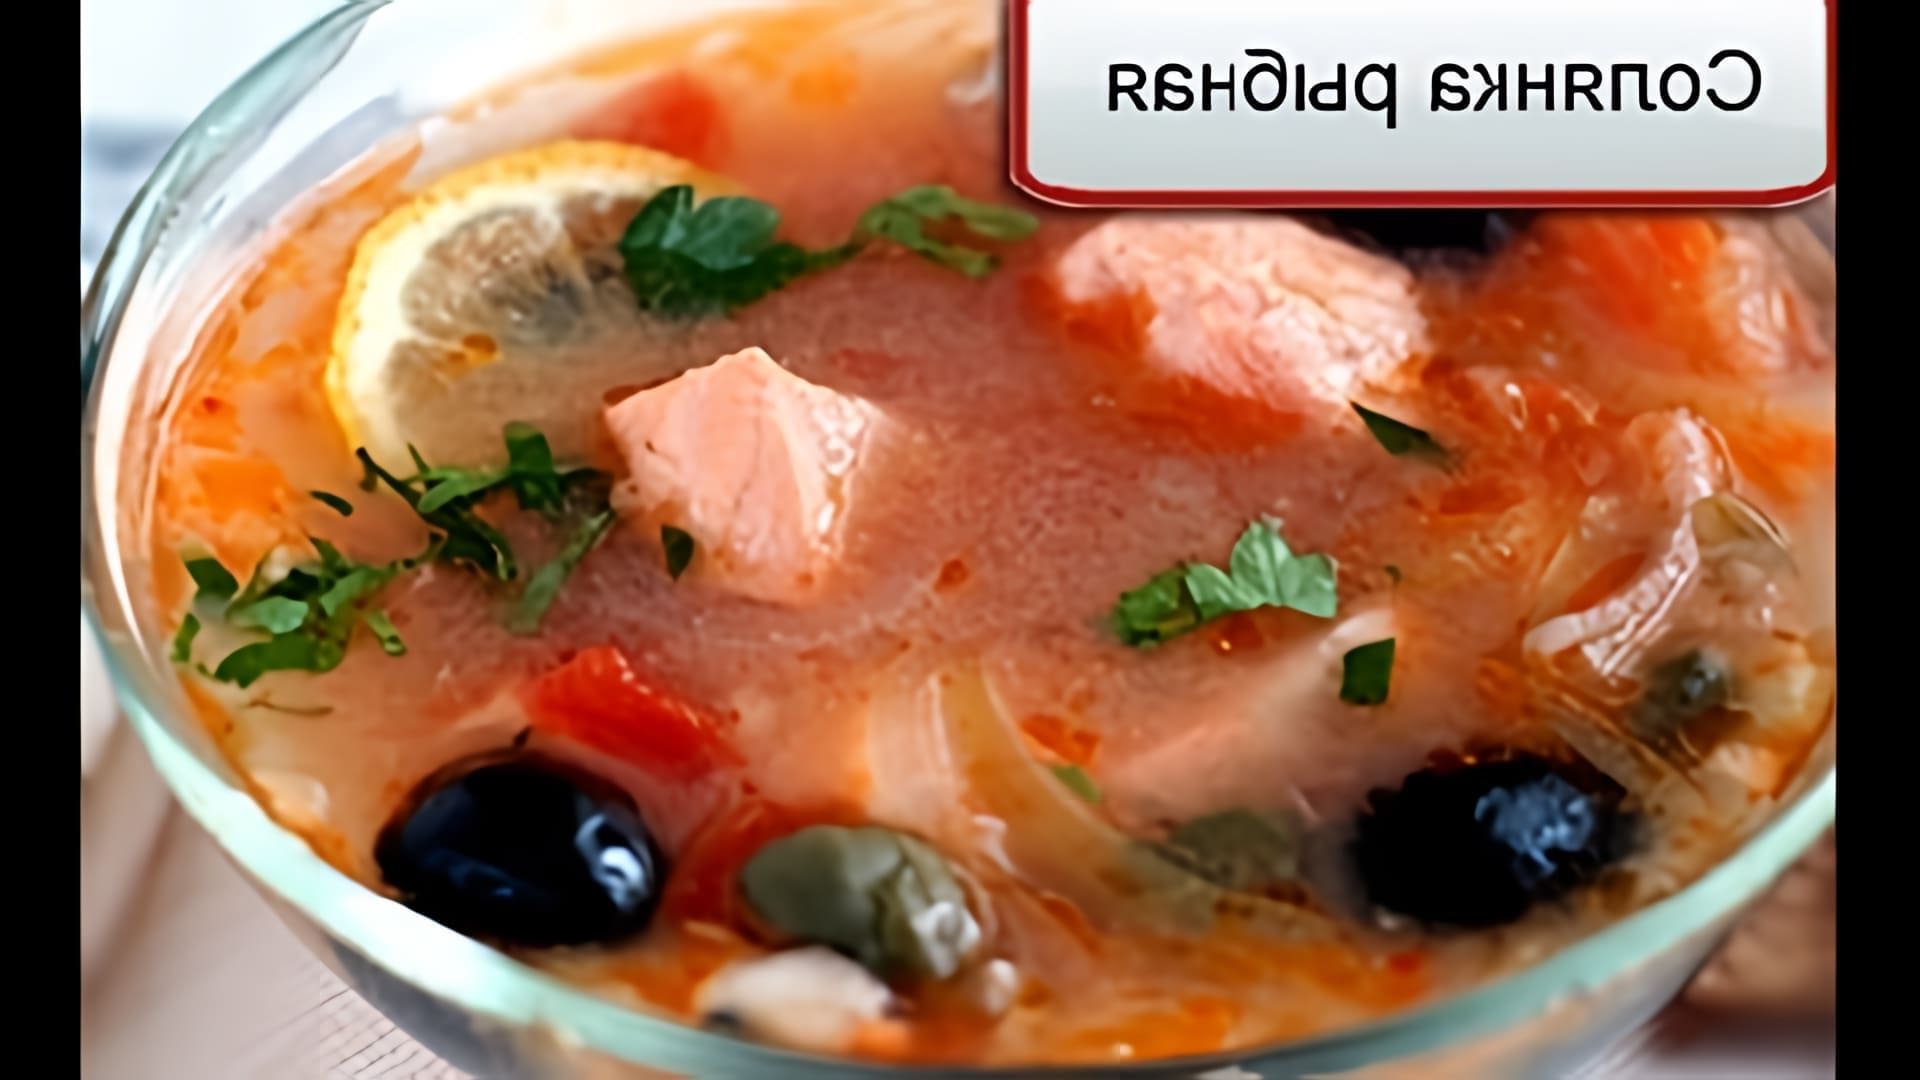 Рыбная солянка - это вкусное и питательное блюдо, которое можно приготовить в домашних условиях